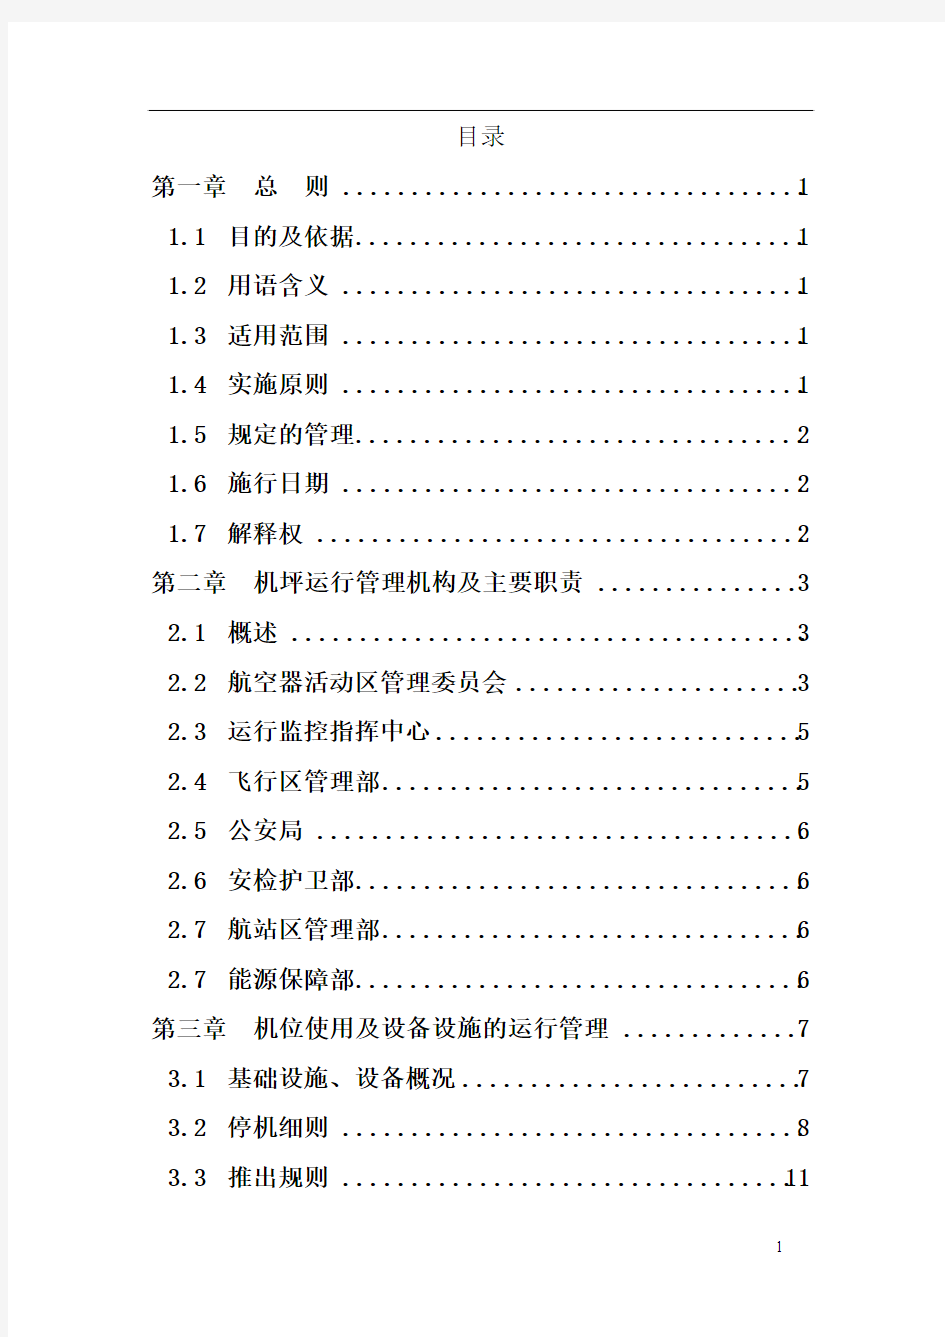 南昌昌北国际机场机坪运行管理规定(2012版)